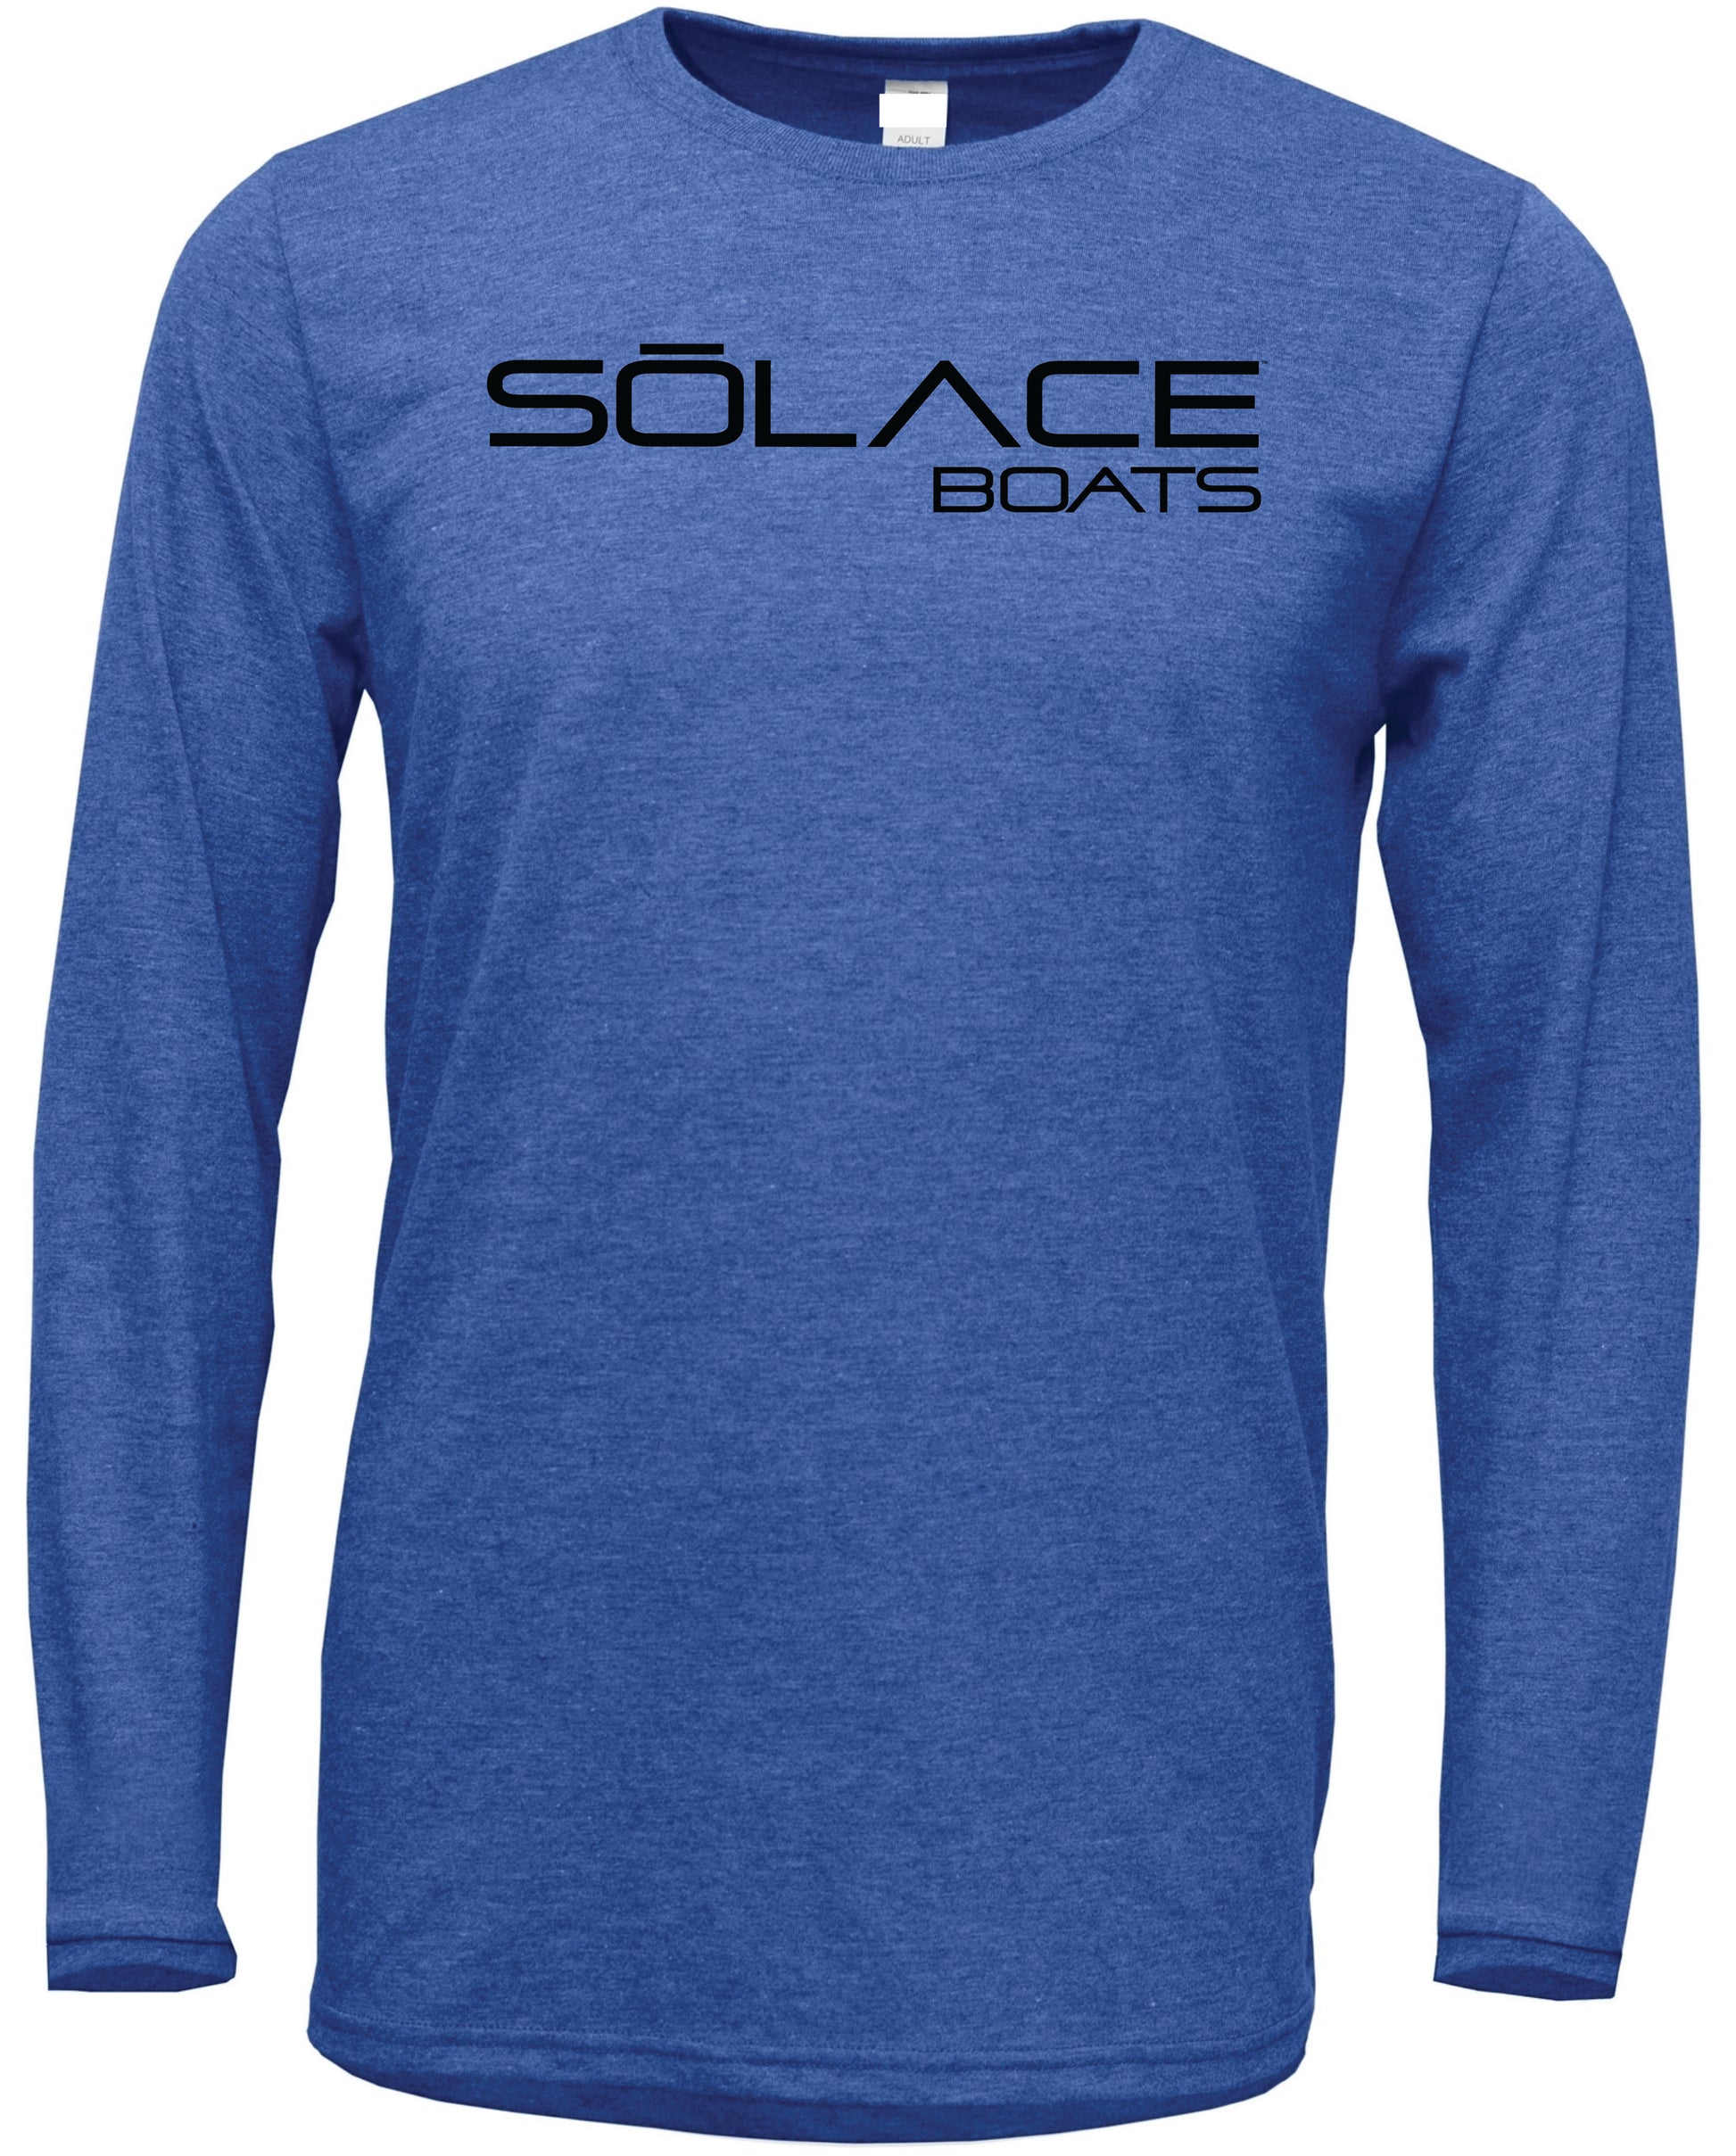 SŌLACE Boats Long Sleeve Performance Tee - Mojo Sportswear Company